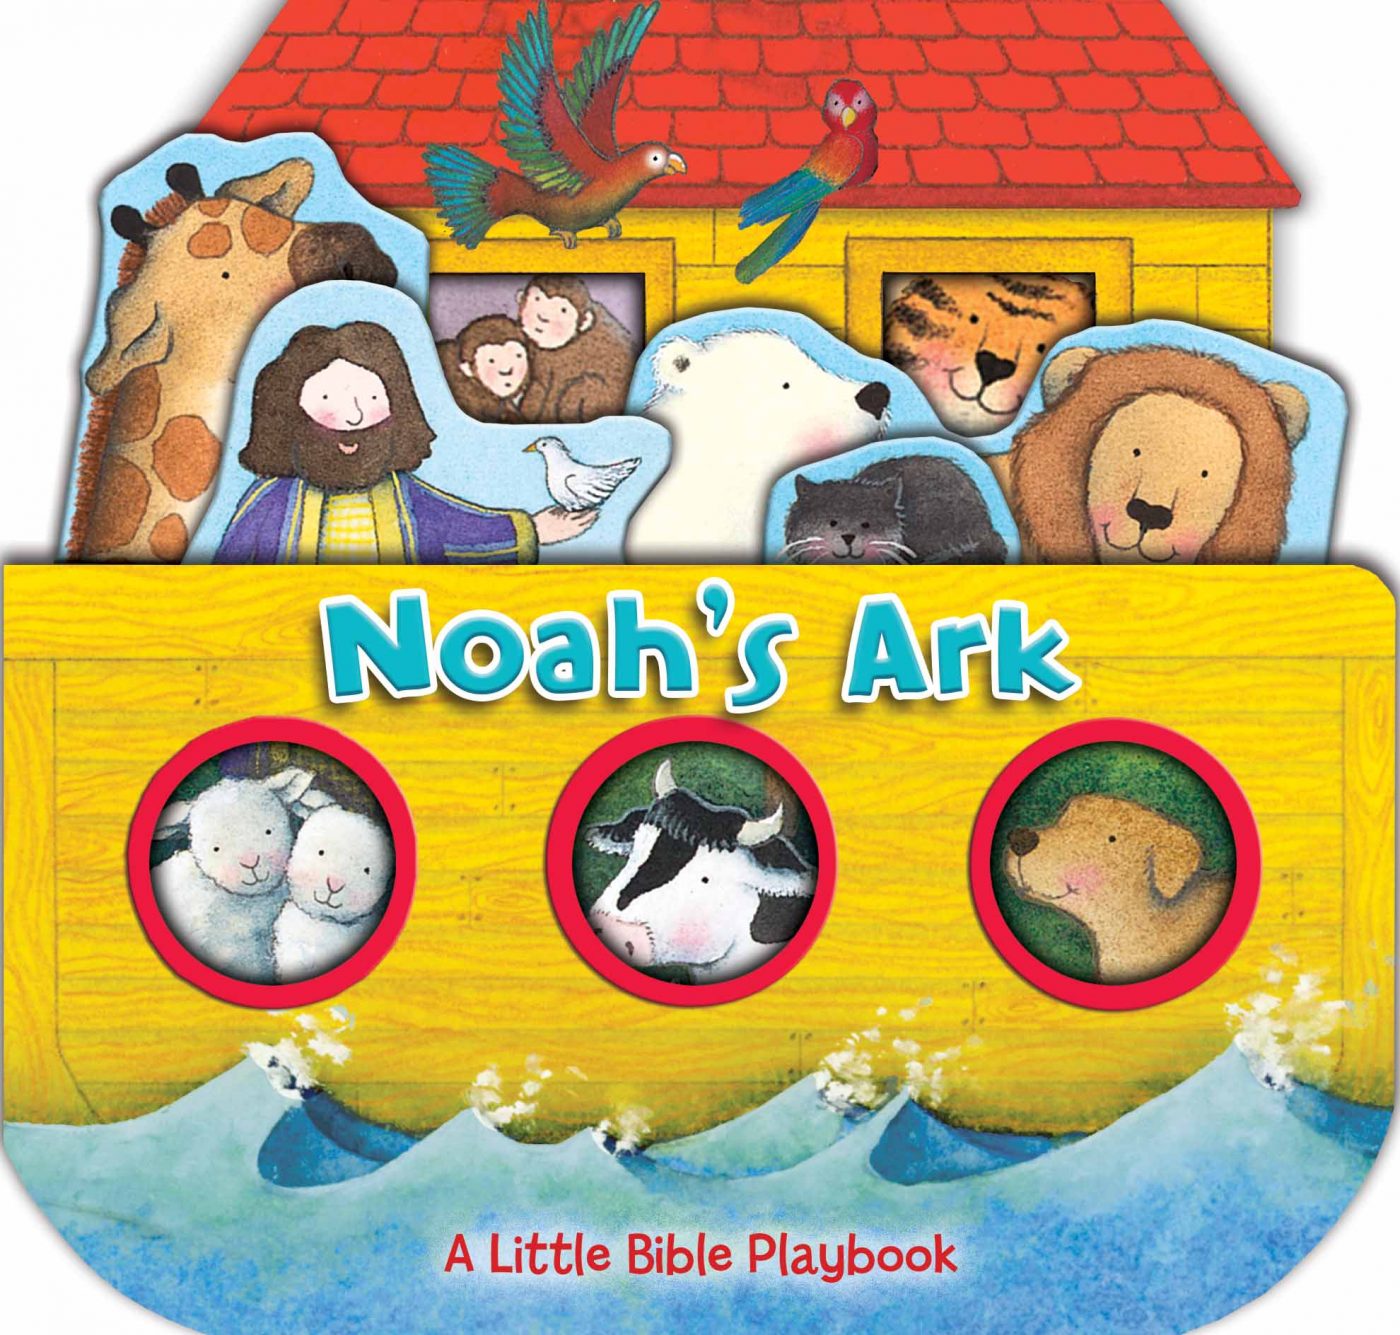 Little Bible Playbook: Noah's Ark